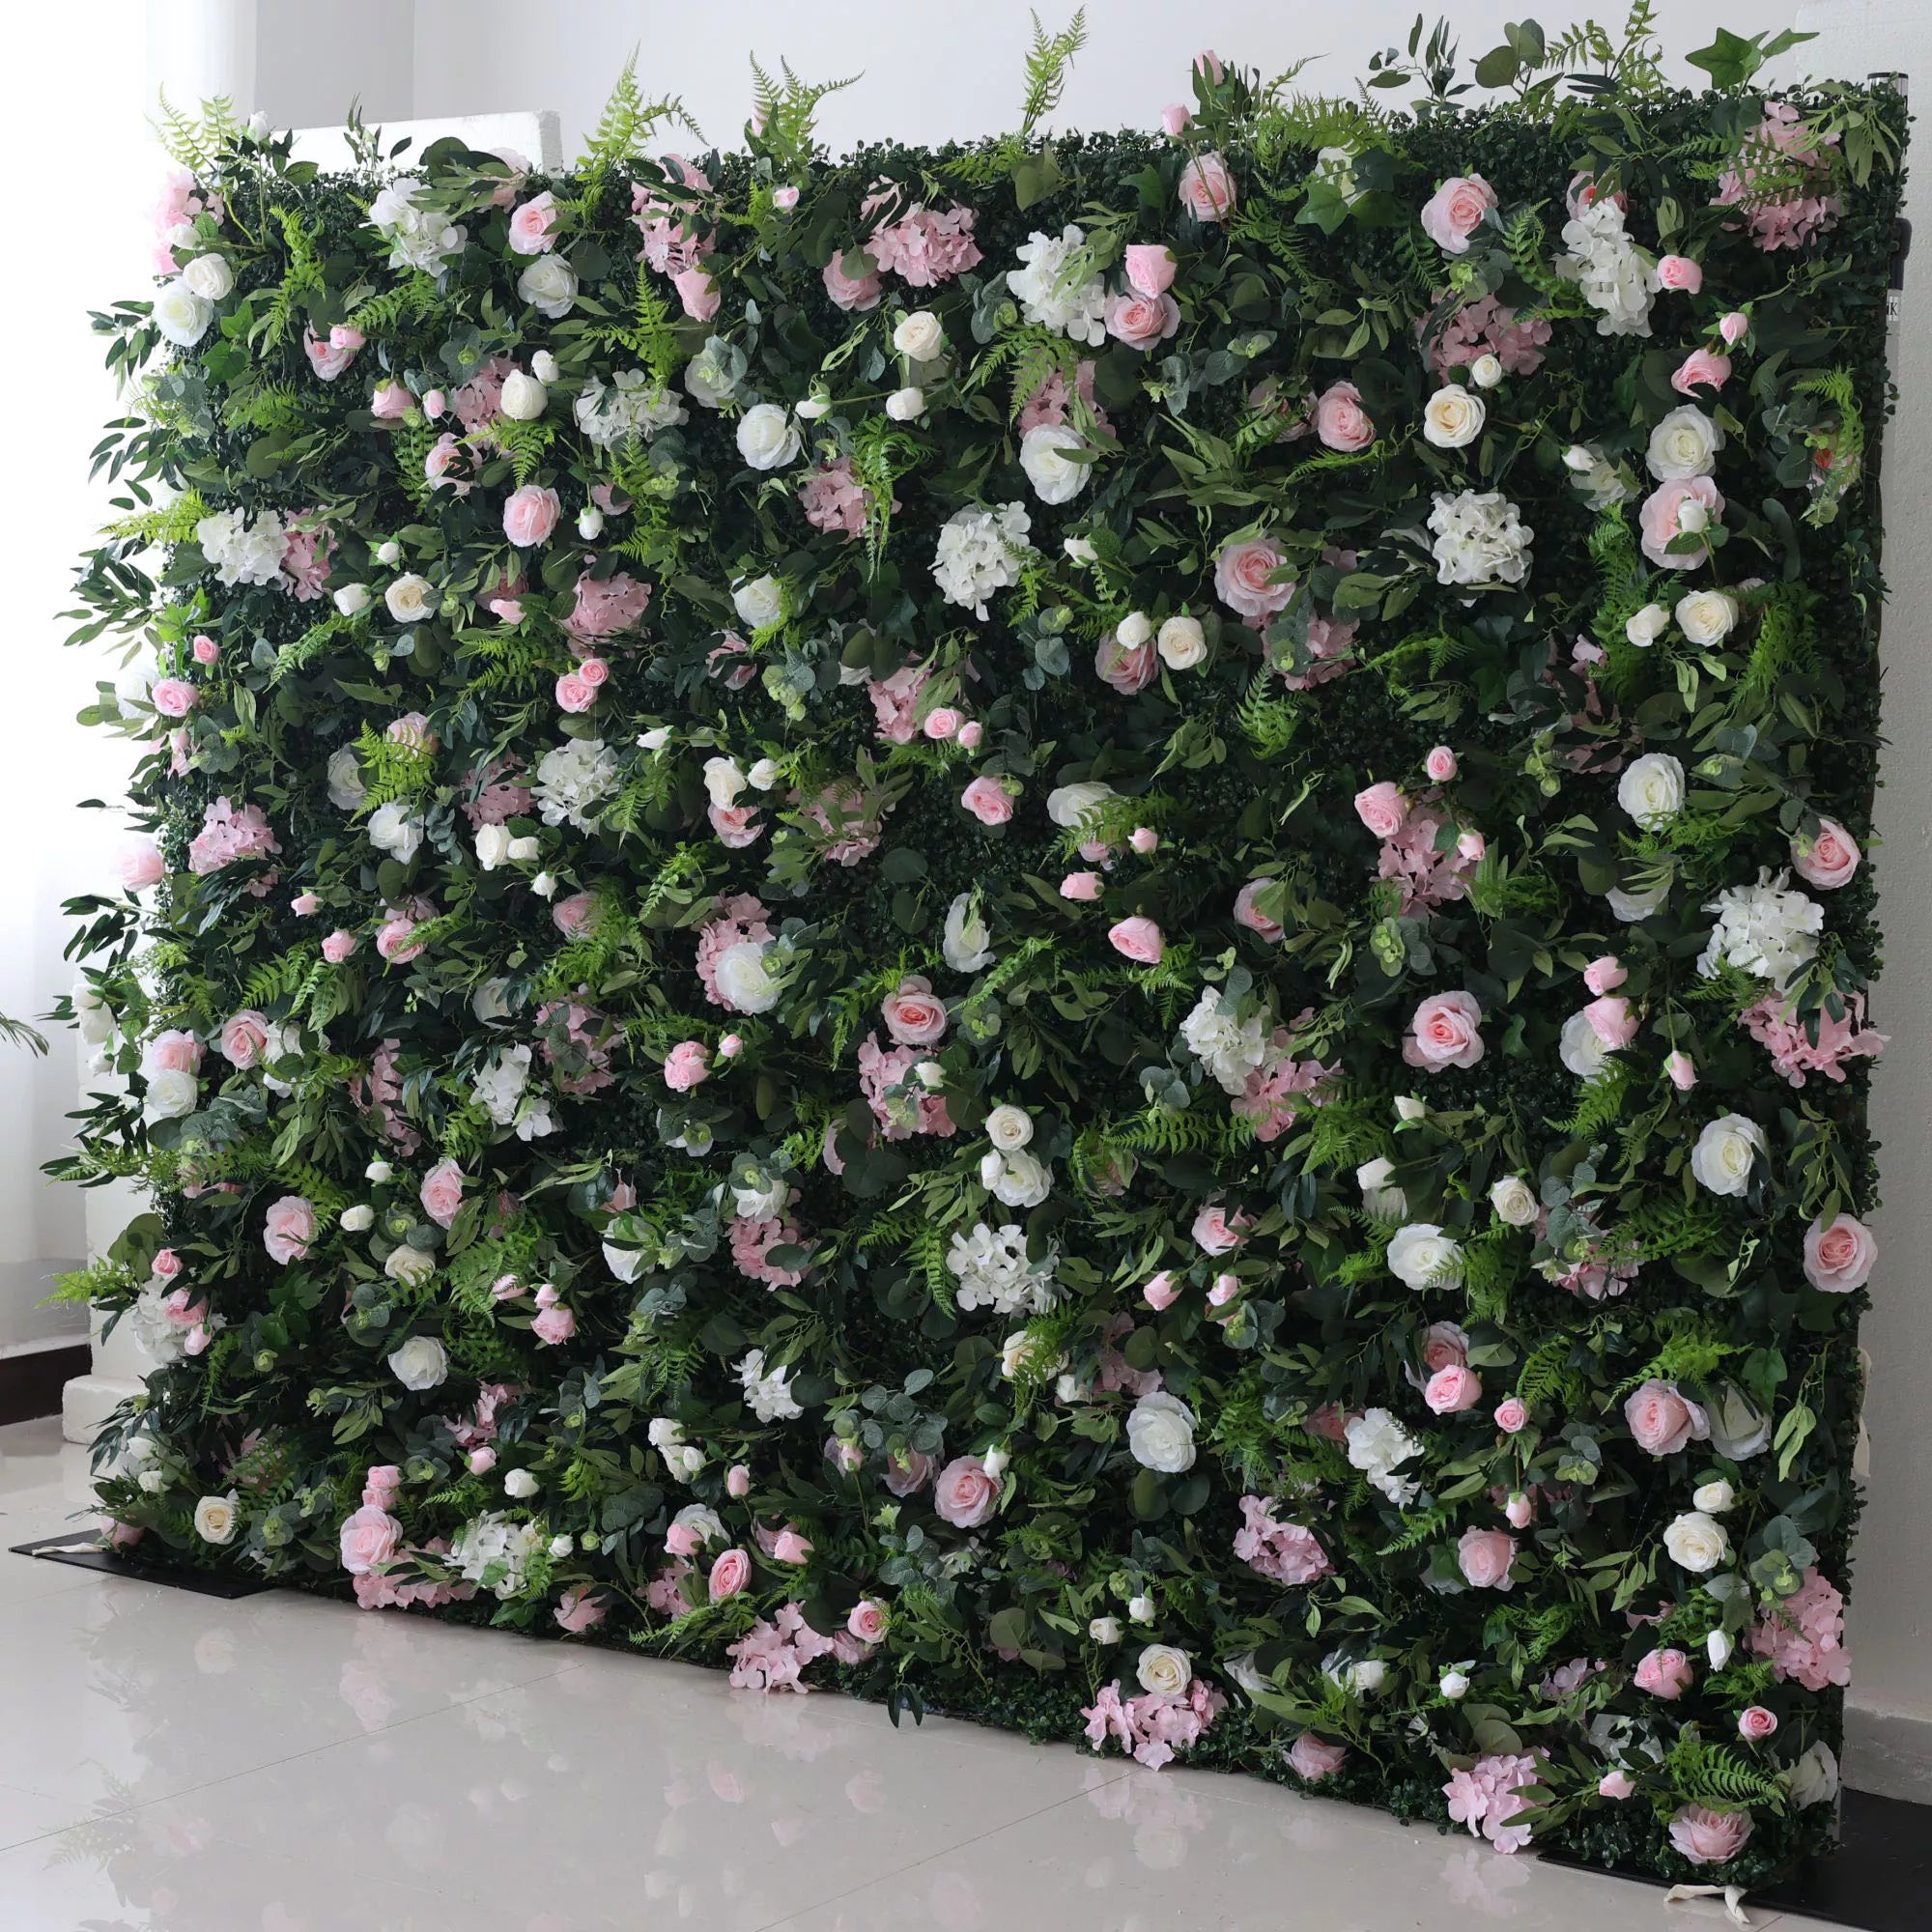 ساحرة أثيرية: أوراق شجر خضراء كثيفة تلتقي بزهور الباستيل-جدار نباتي مثالي لنزوات وأنيق